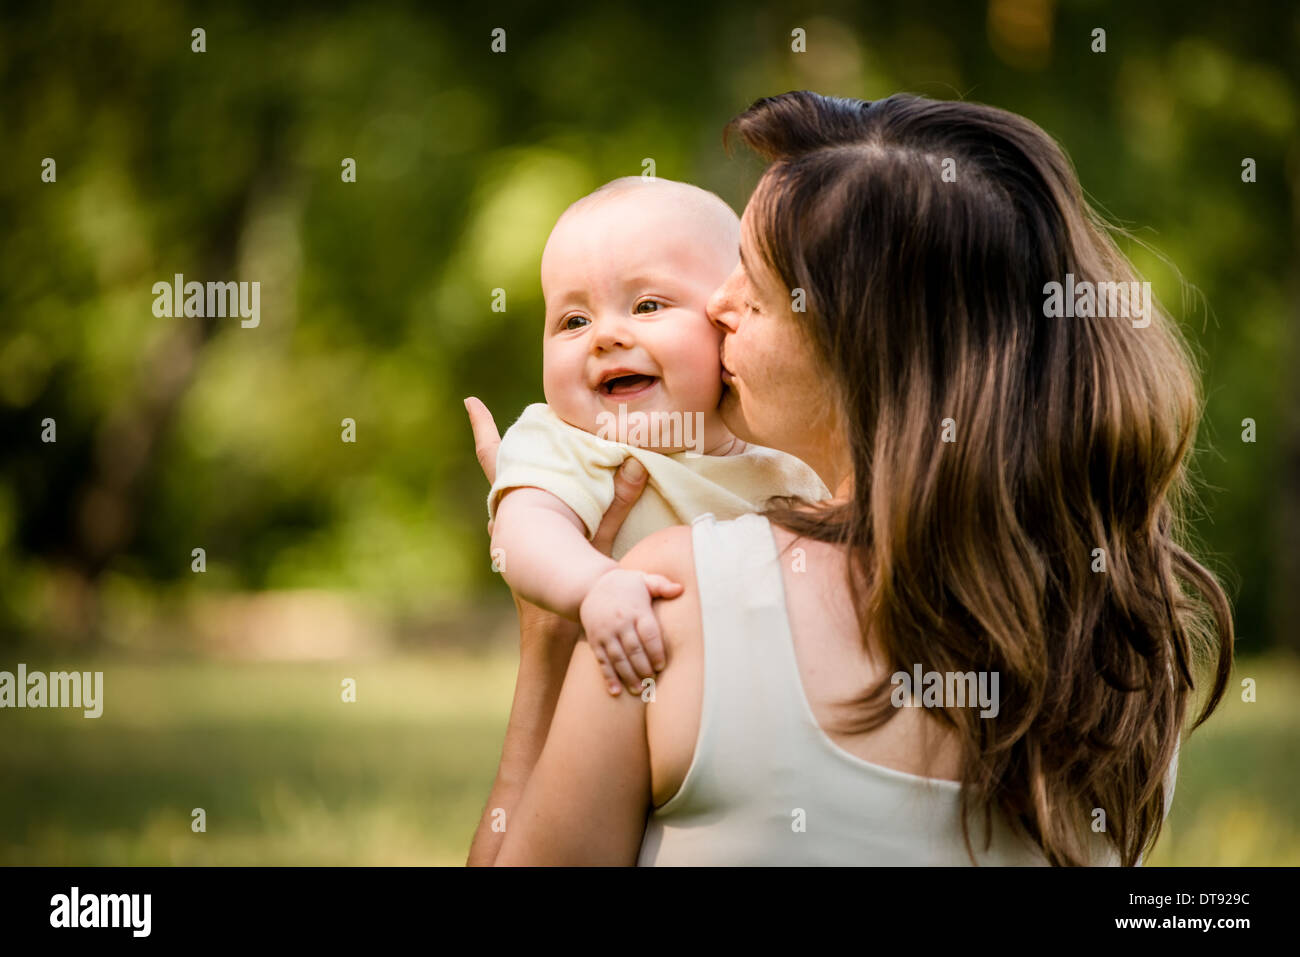 Glückliche Mutter küssen und umarmen ihre Baby - draußen in der Natur Stockfoto